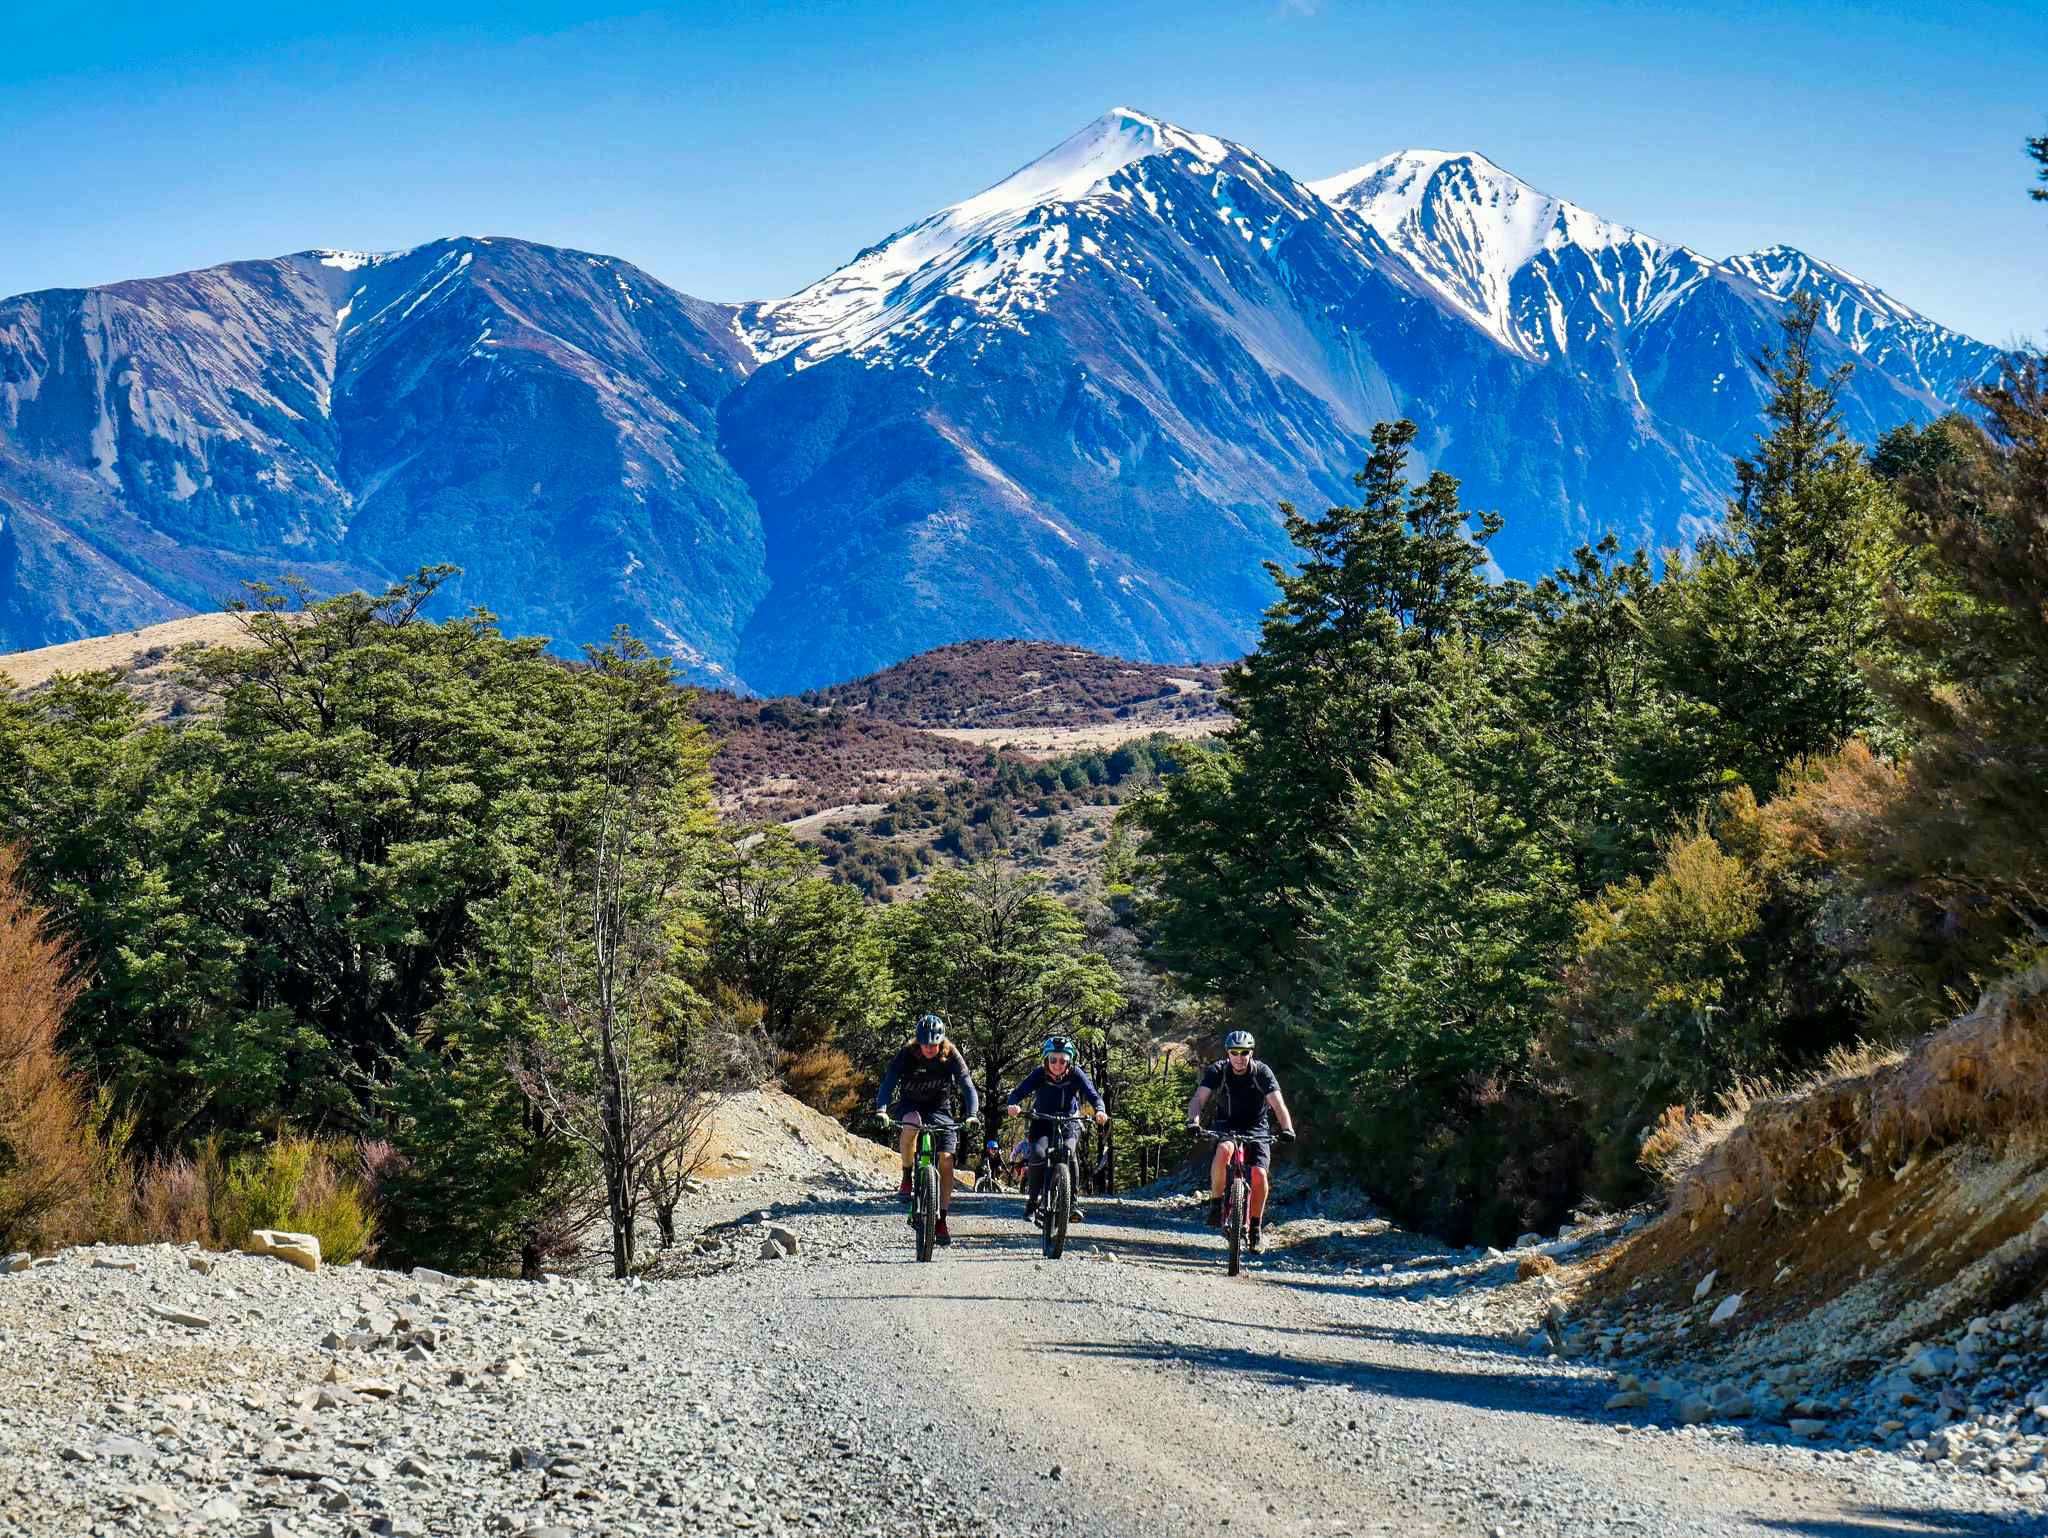 The 303km Coast to Coast Trail Across New Zealand's South Island